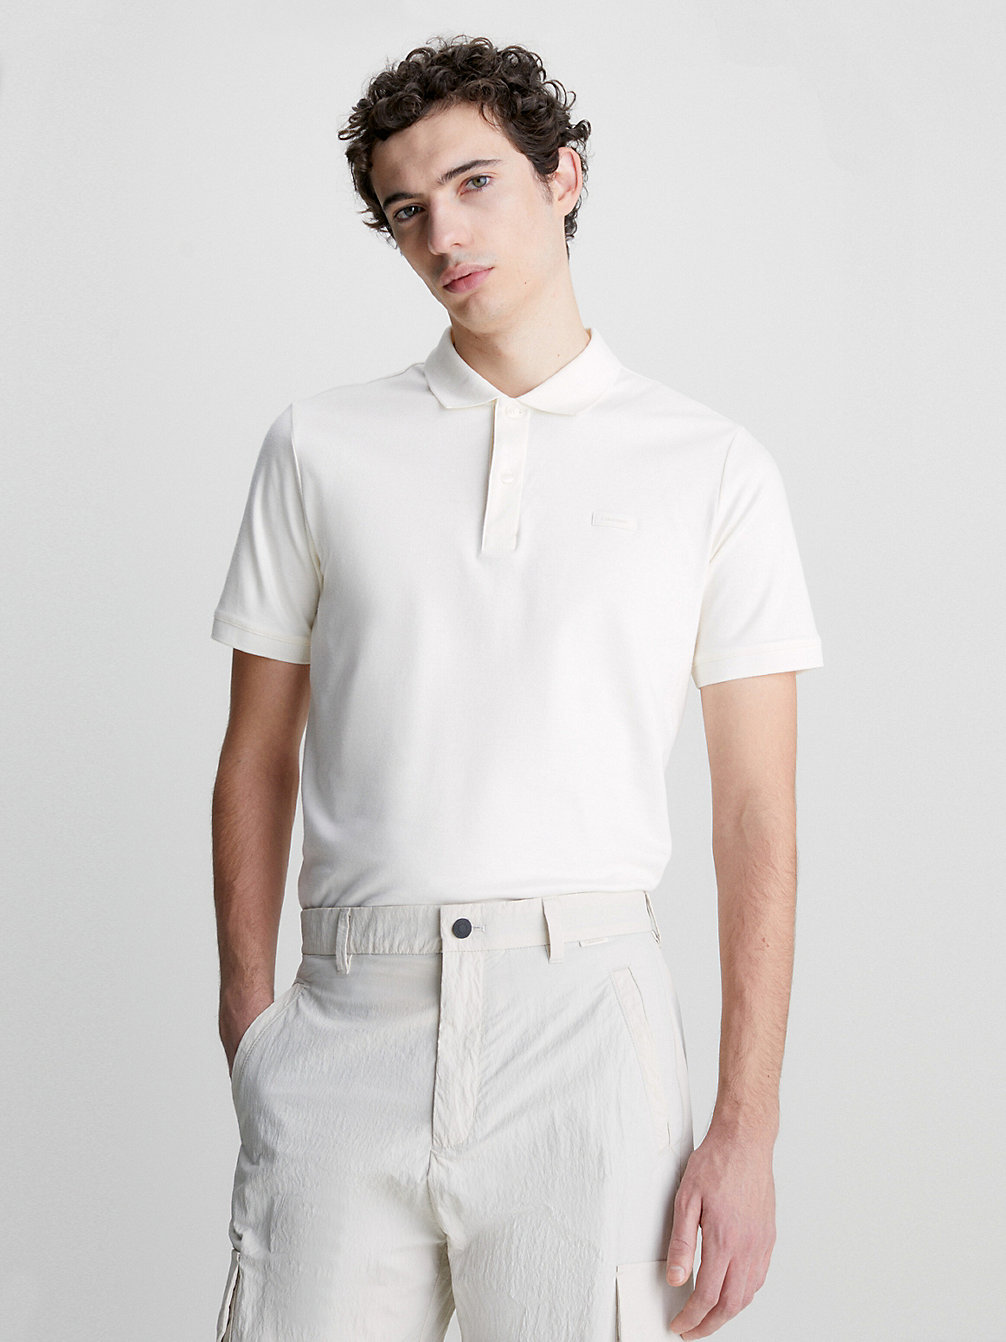 EGRET > Slim Polo Shirt > undefined женщины - Calvin Klein